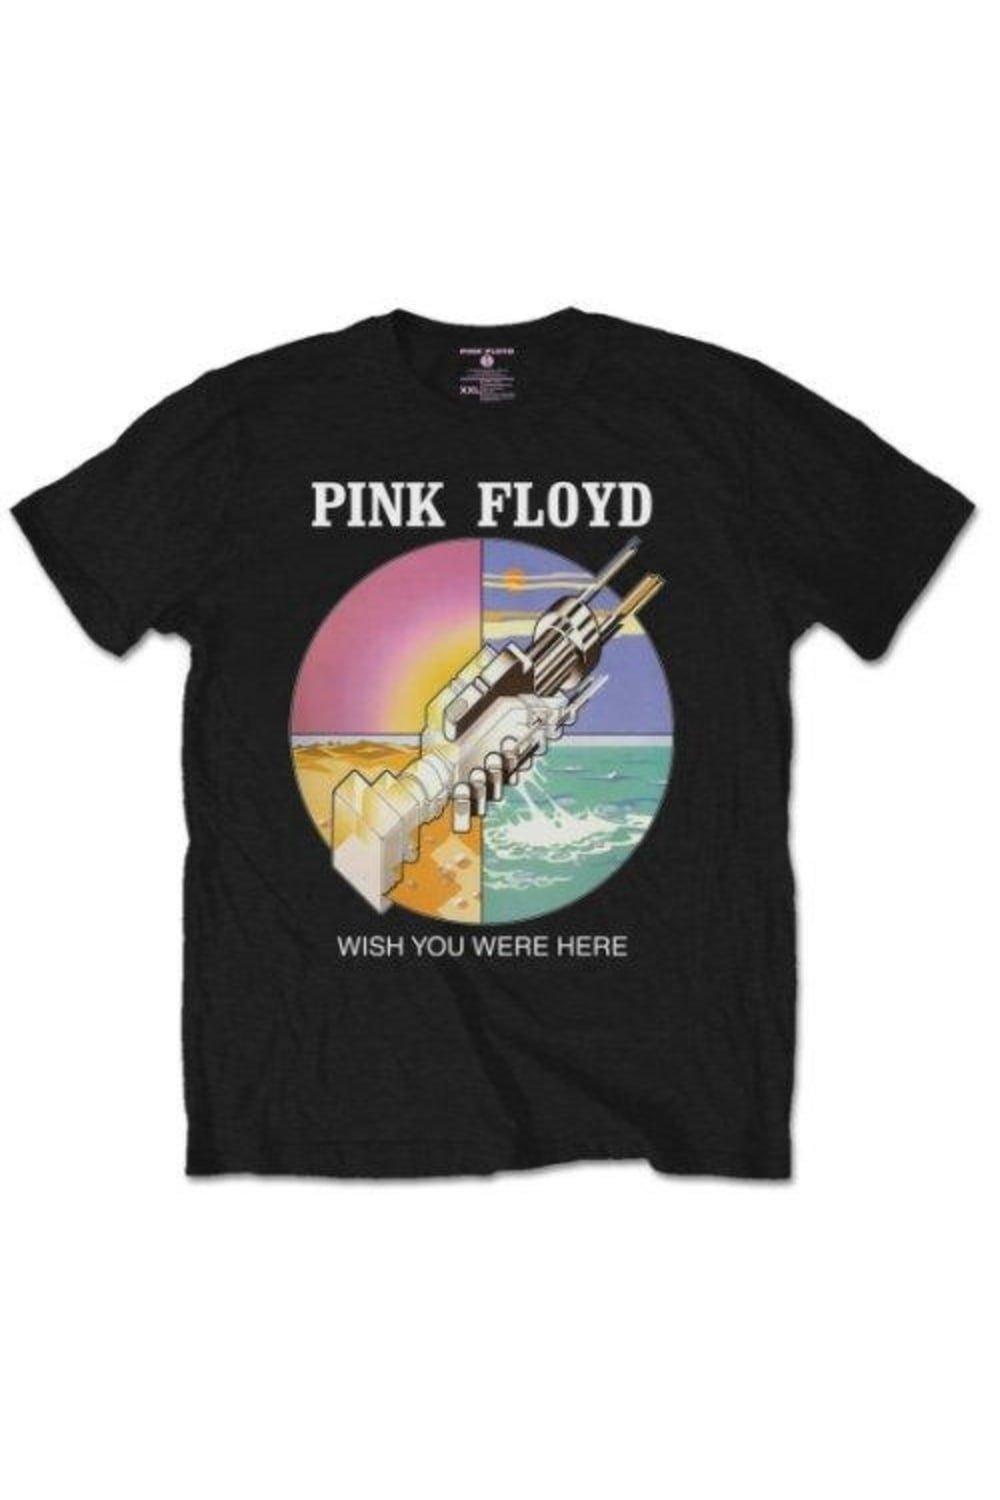 Круглая футболка Wish You Were Here Pink Floyd, черный london orion orchestra pink floyd s wish you were here symphonic